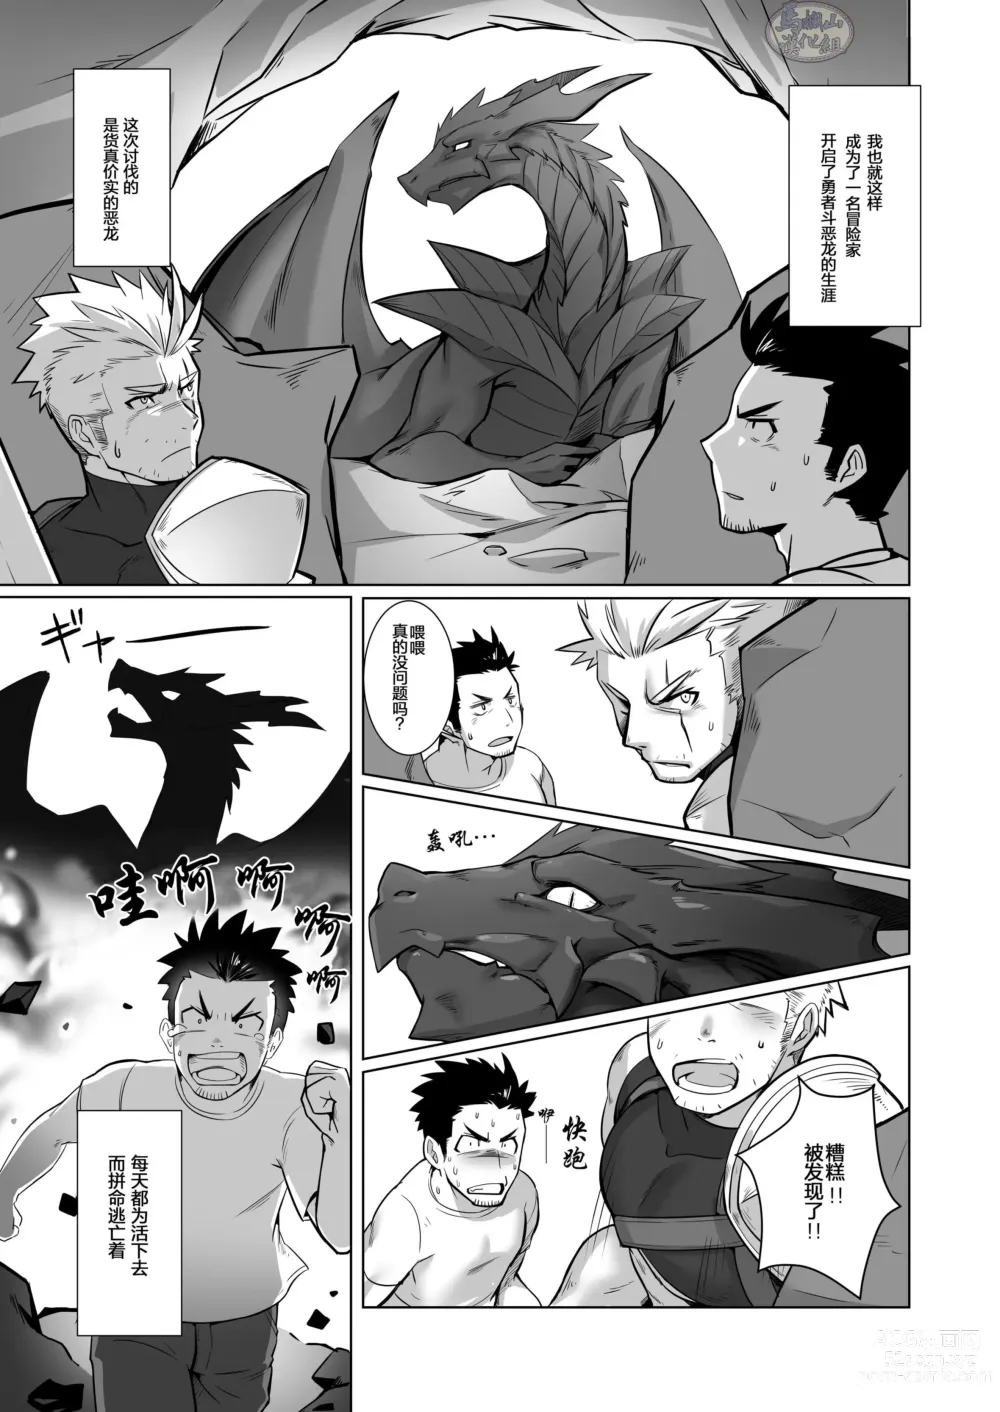 Page 7 of doujinshi 关于我在转生之后身边全是肌肉男的奇闻轶事